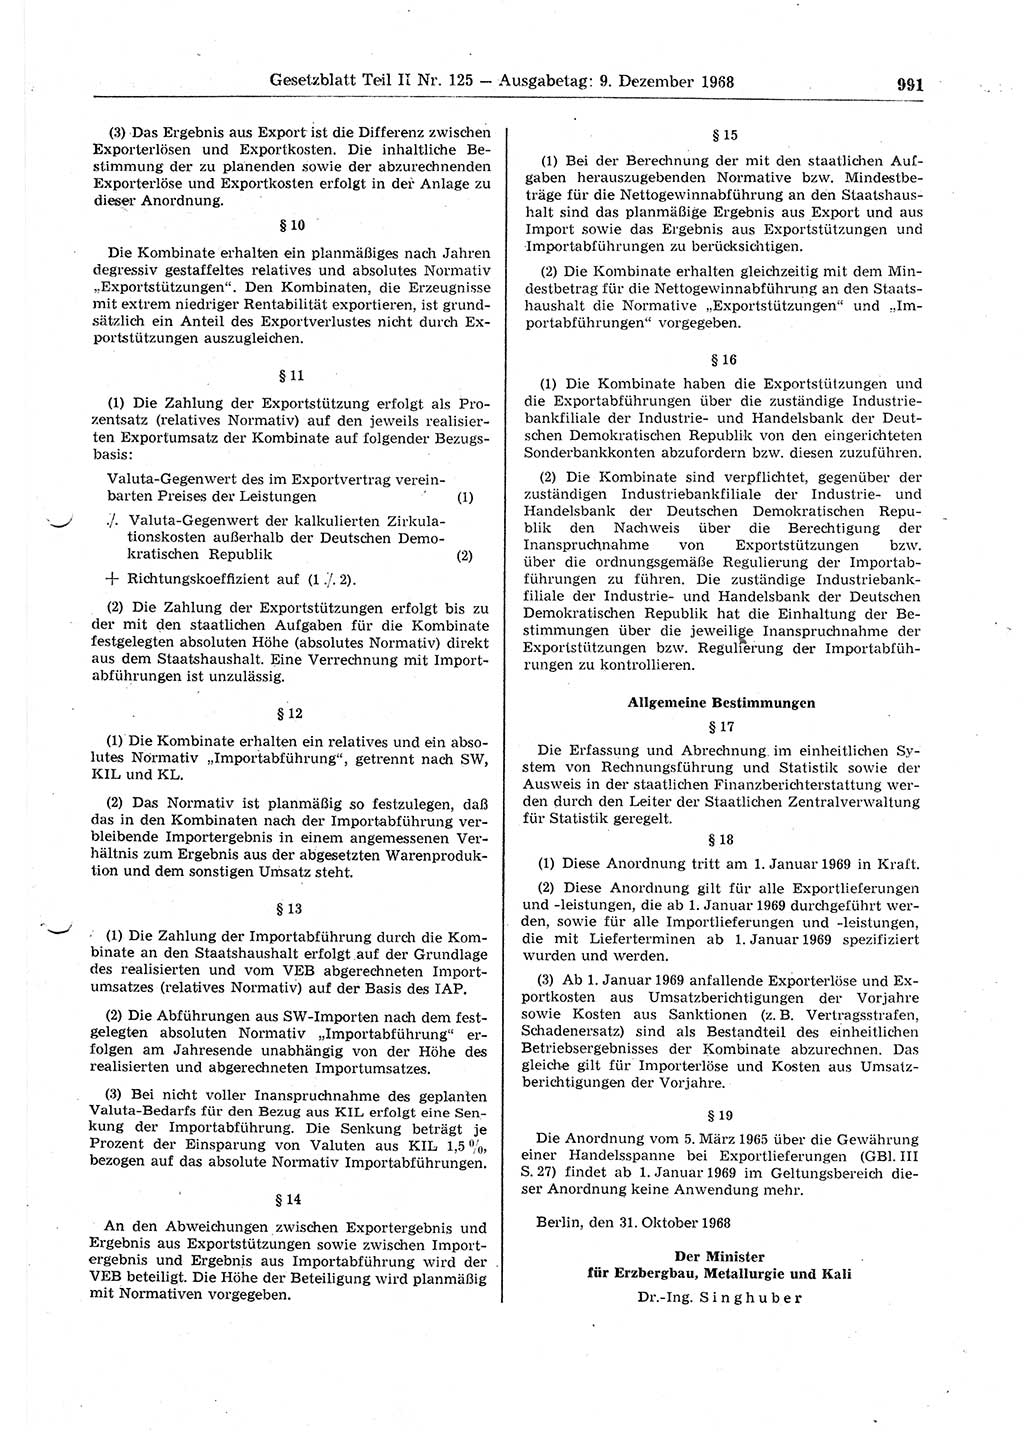 Gesetzblatt (GBl.) der Deutschen Demokratischen Republik (DDR) Teil ⅠⅠ 1968, Seite 991 (GBl. DDR ⅠⅠ 1968, S. 991)